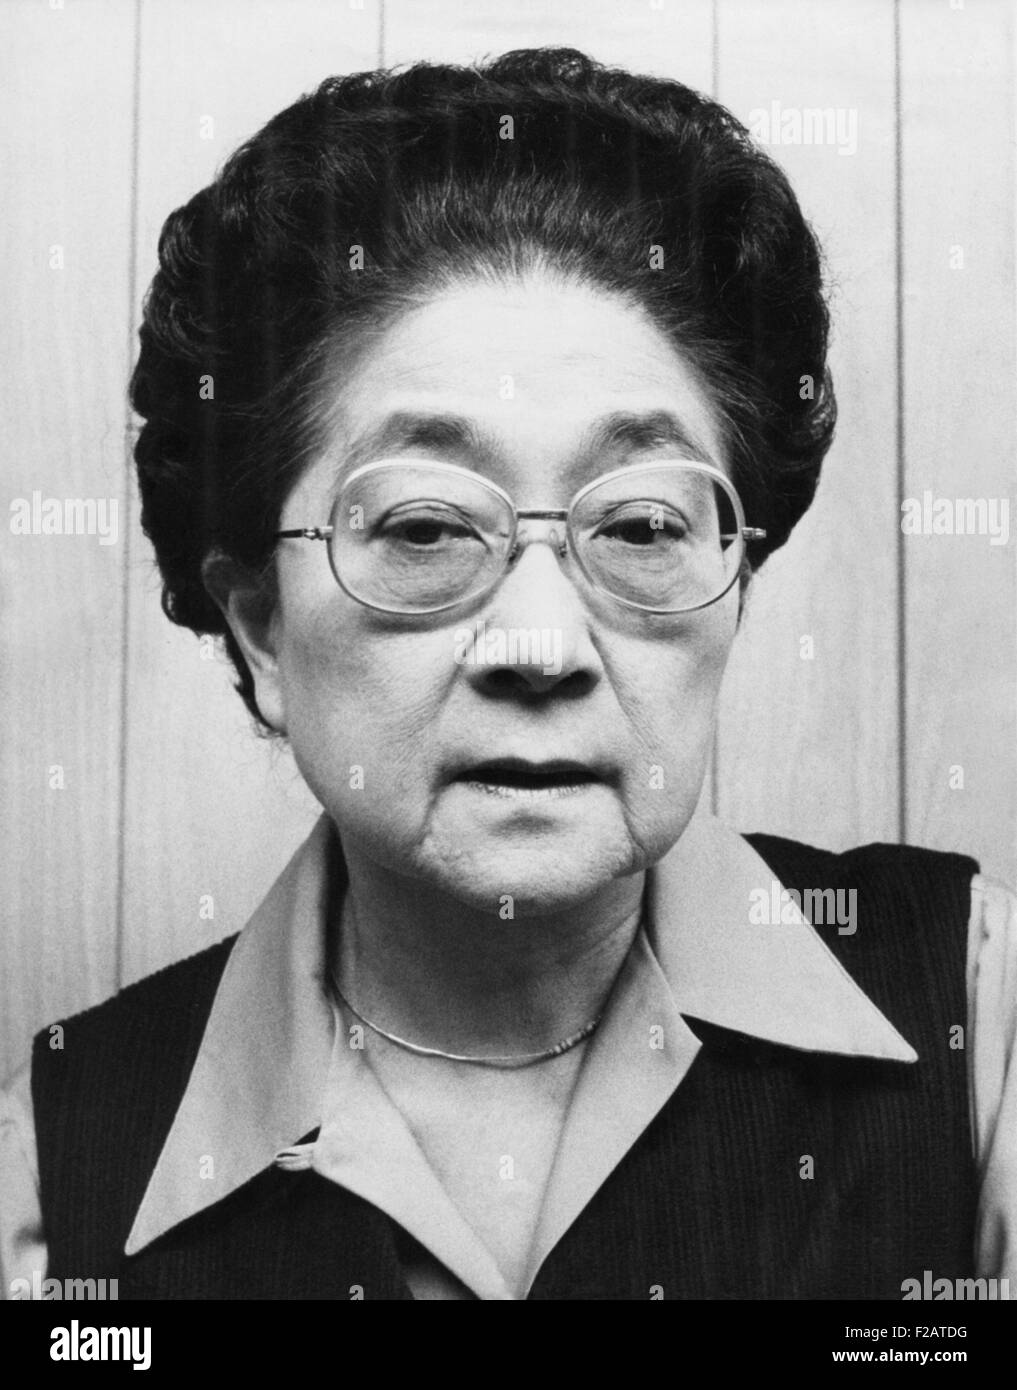 IVA Toguri D'Aquino im Jahre 1976, als japanisch-amerikanische Gruppe ihre Begnadigung gesucht. Sie wurde im Jahr 1949 wegen Hochverrats verurteilt. Stockfoto